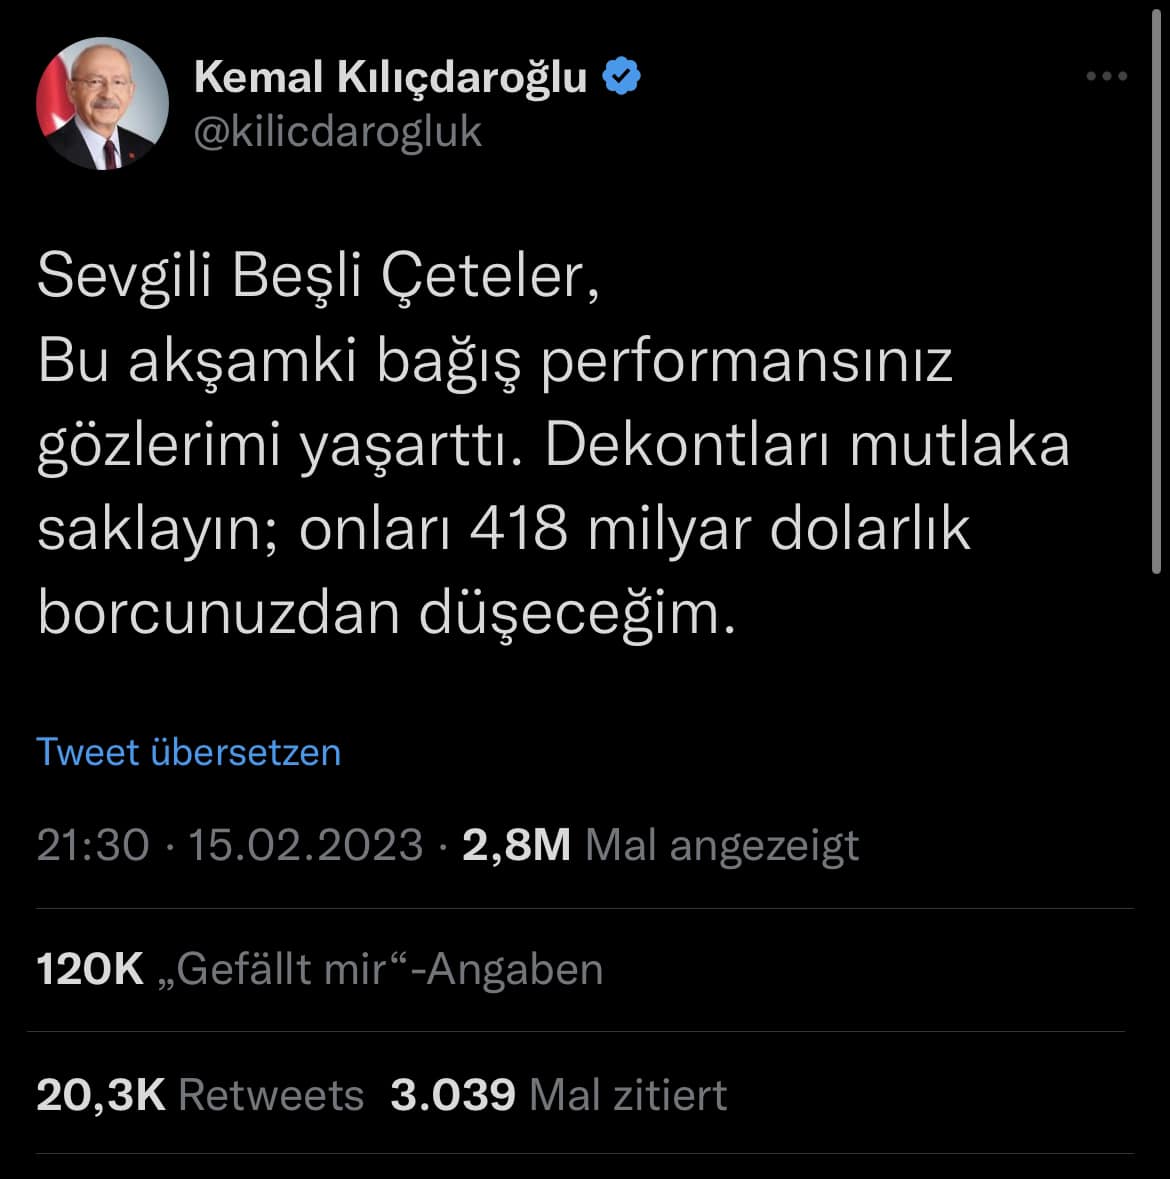 Kemal Kilicdaroglu Twitter